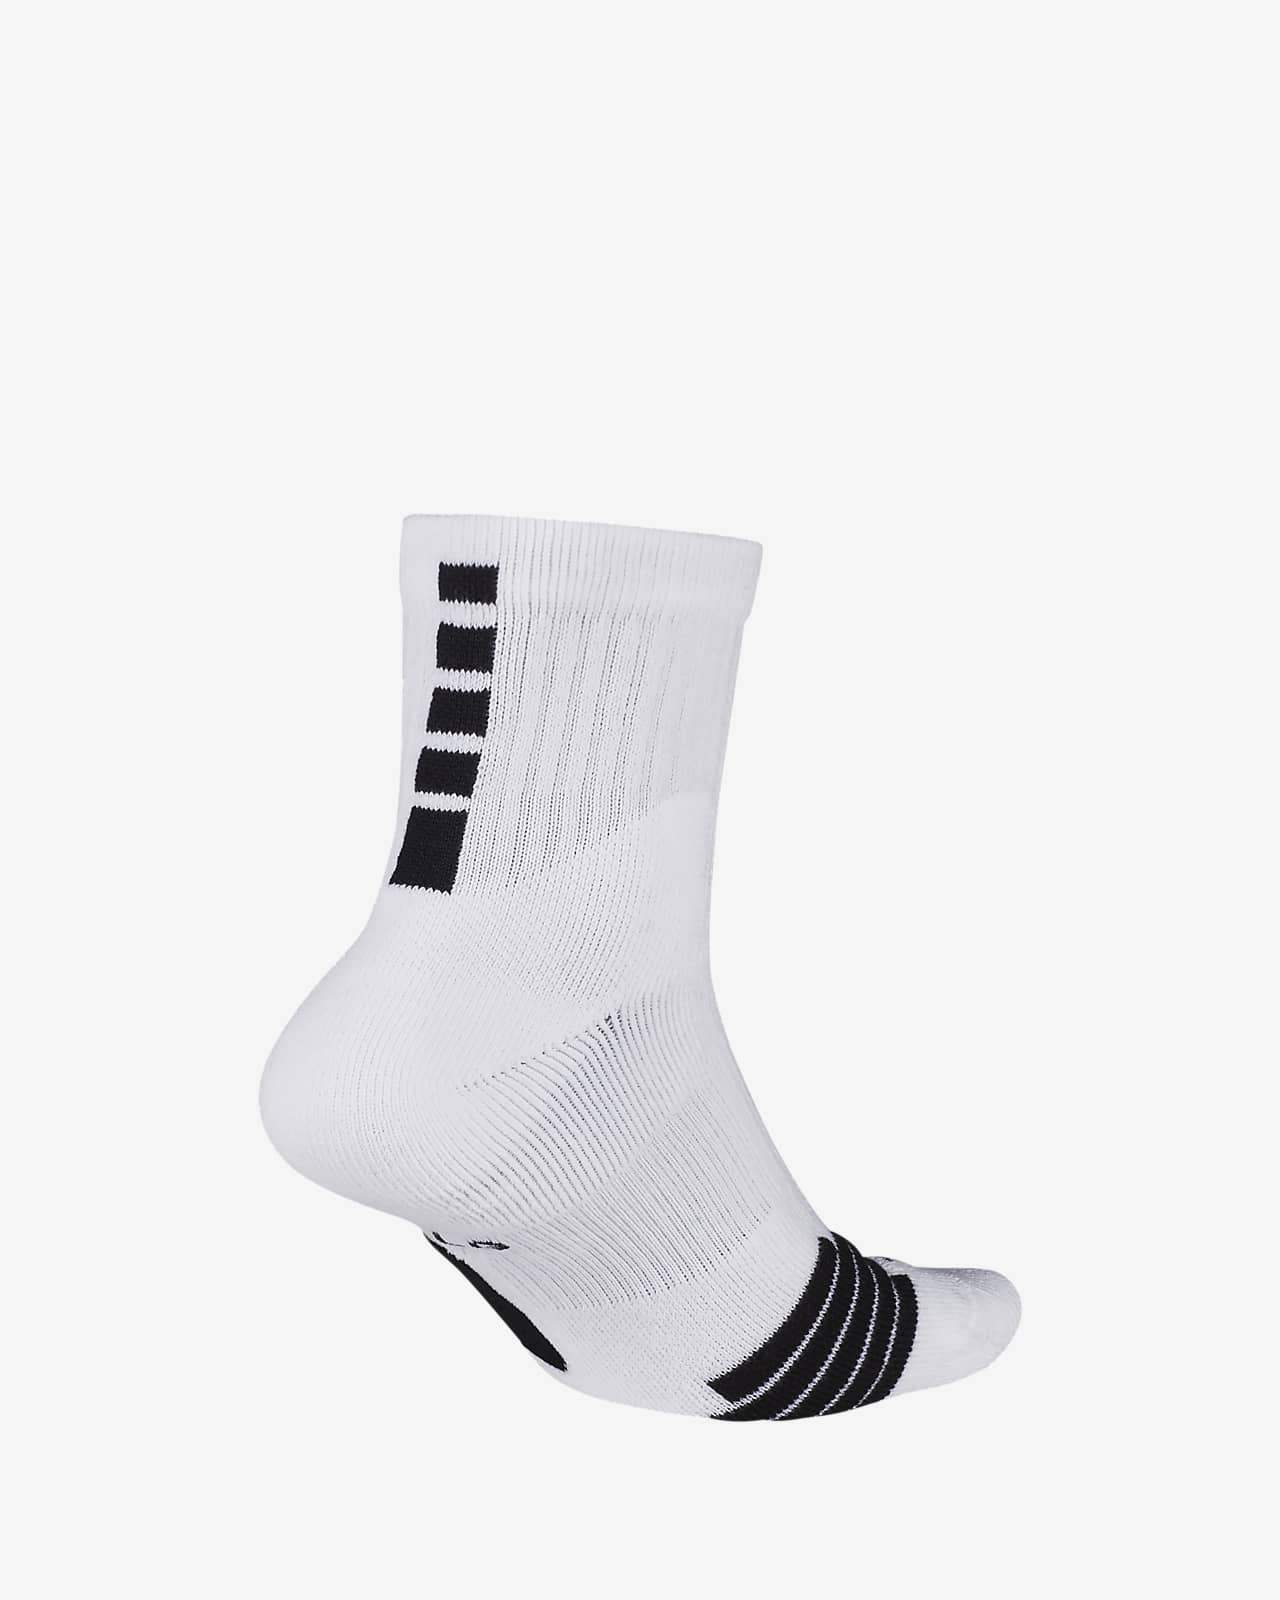 nike pro socks black